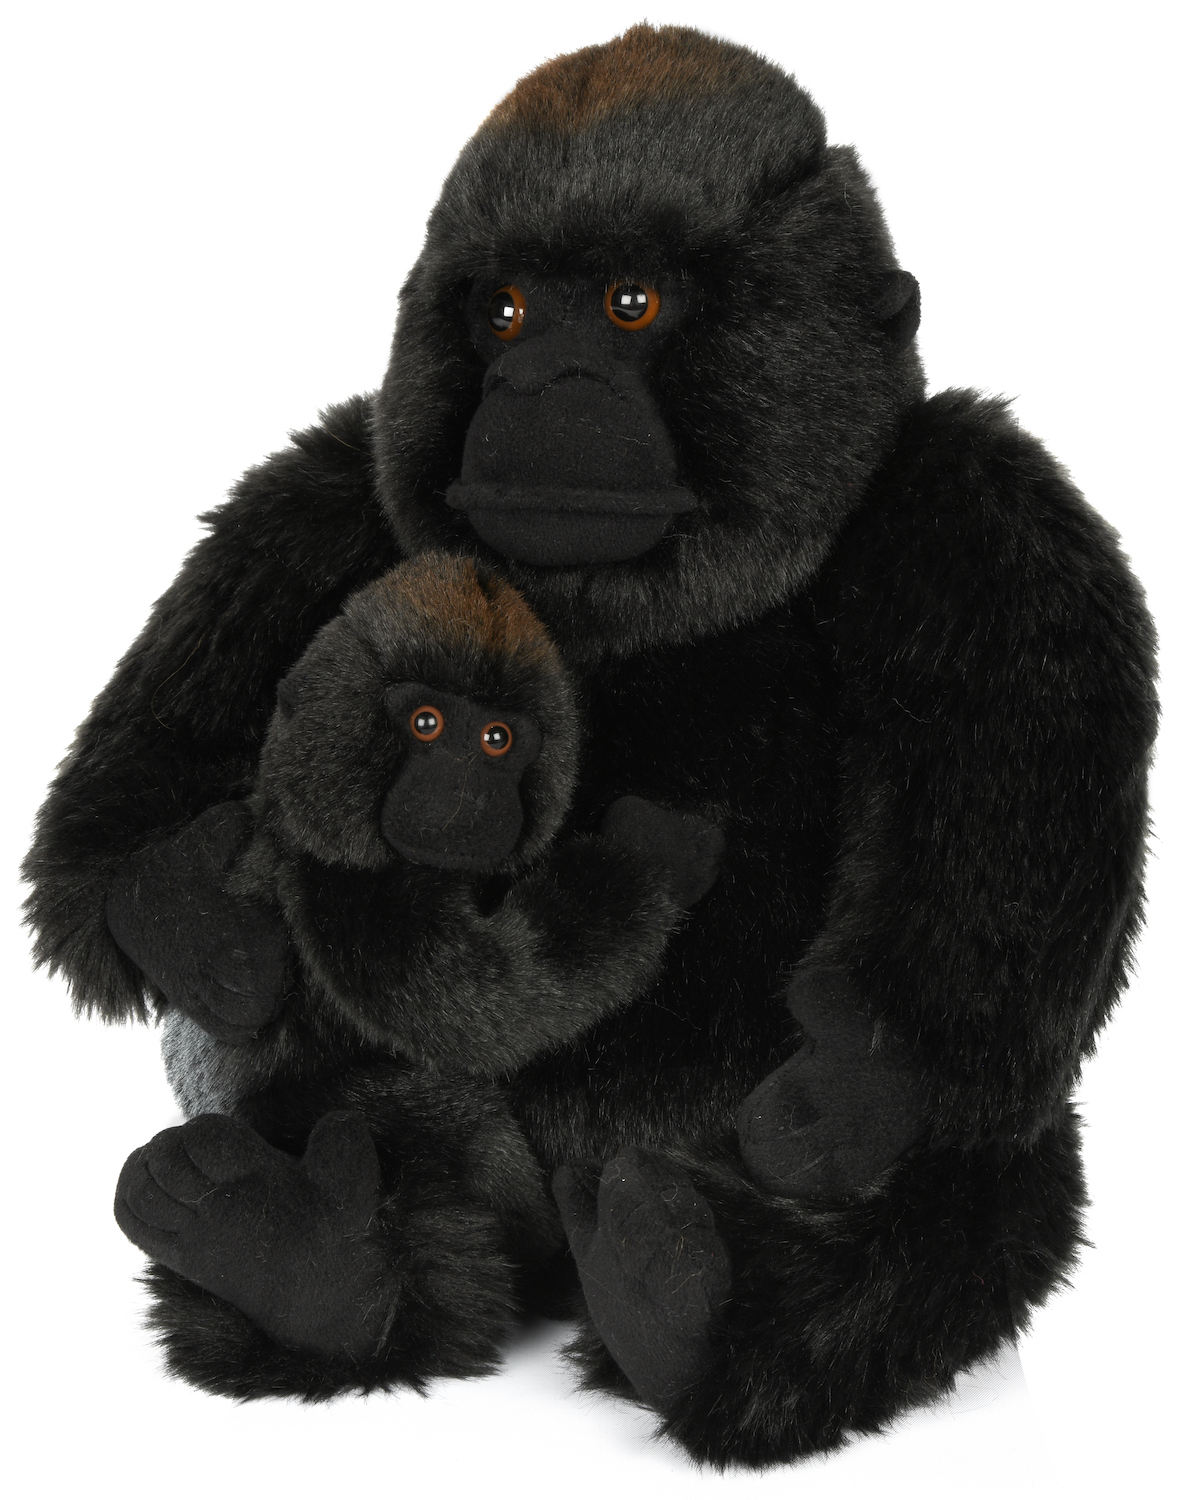 Gorilla mit Baby, sitzend - 29 cm (Höhe)